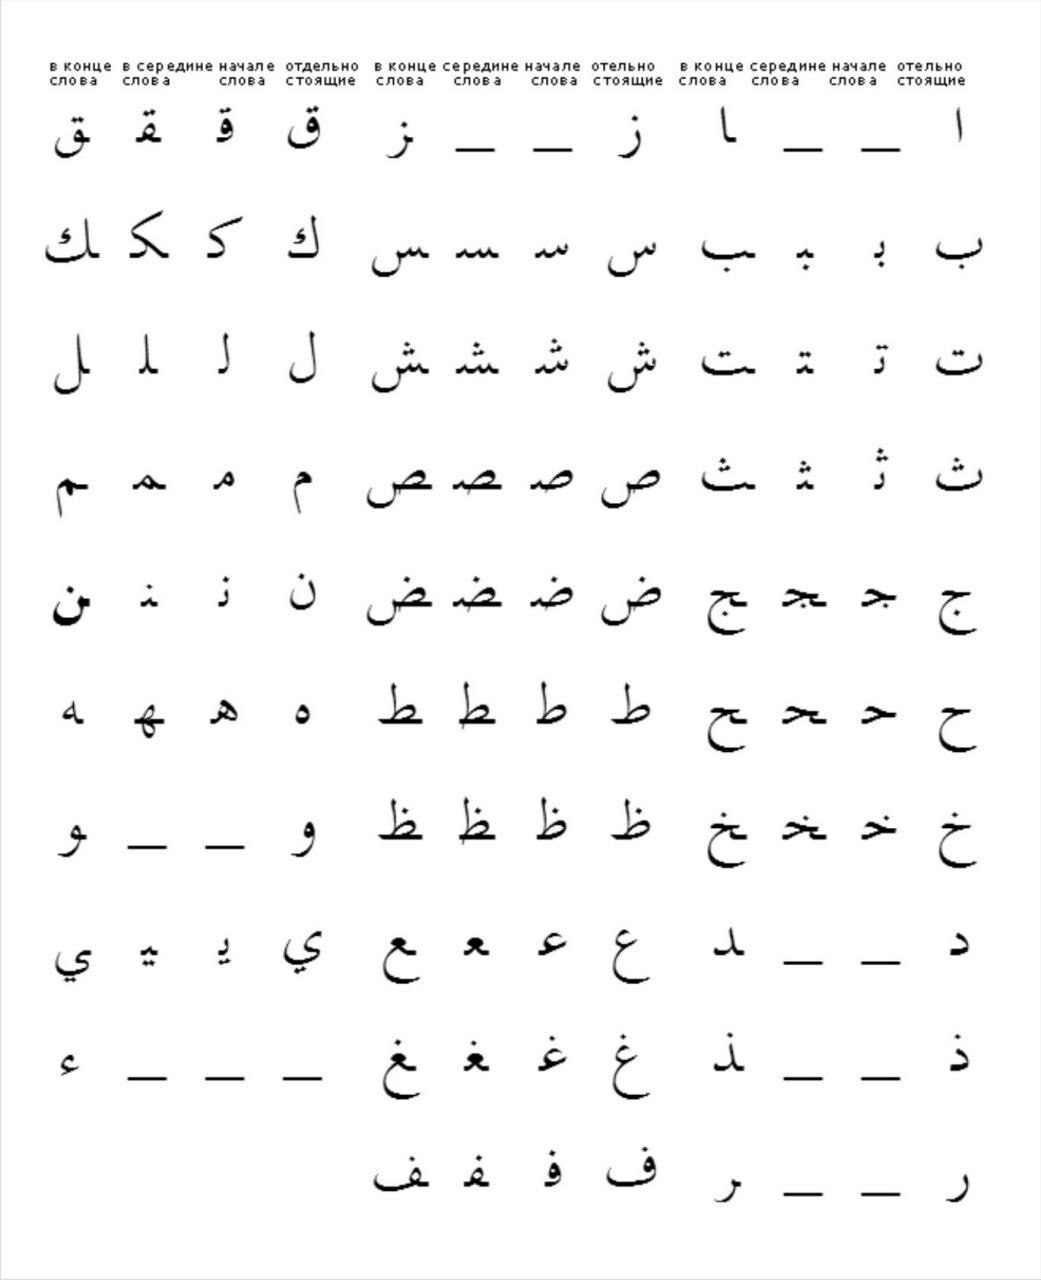 Название арабских букв. Алфавит арабского языка. Прописные буквы арабского алфавита. Таблица алфавита арабского языка. Арабский алфавит правописание букв.